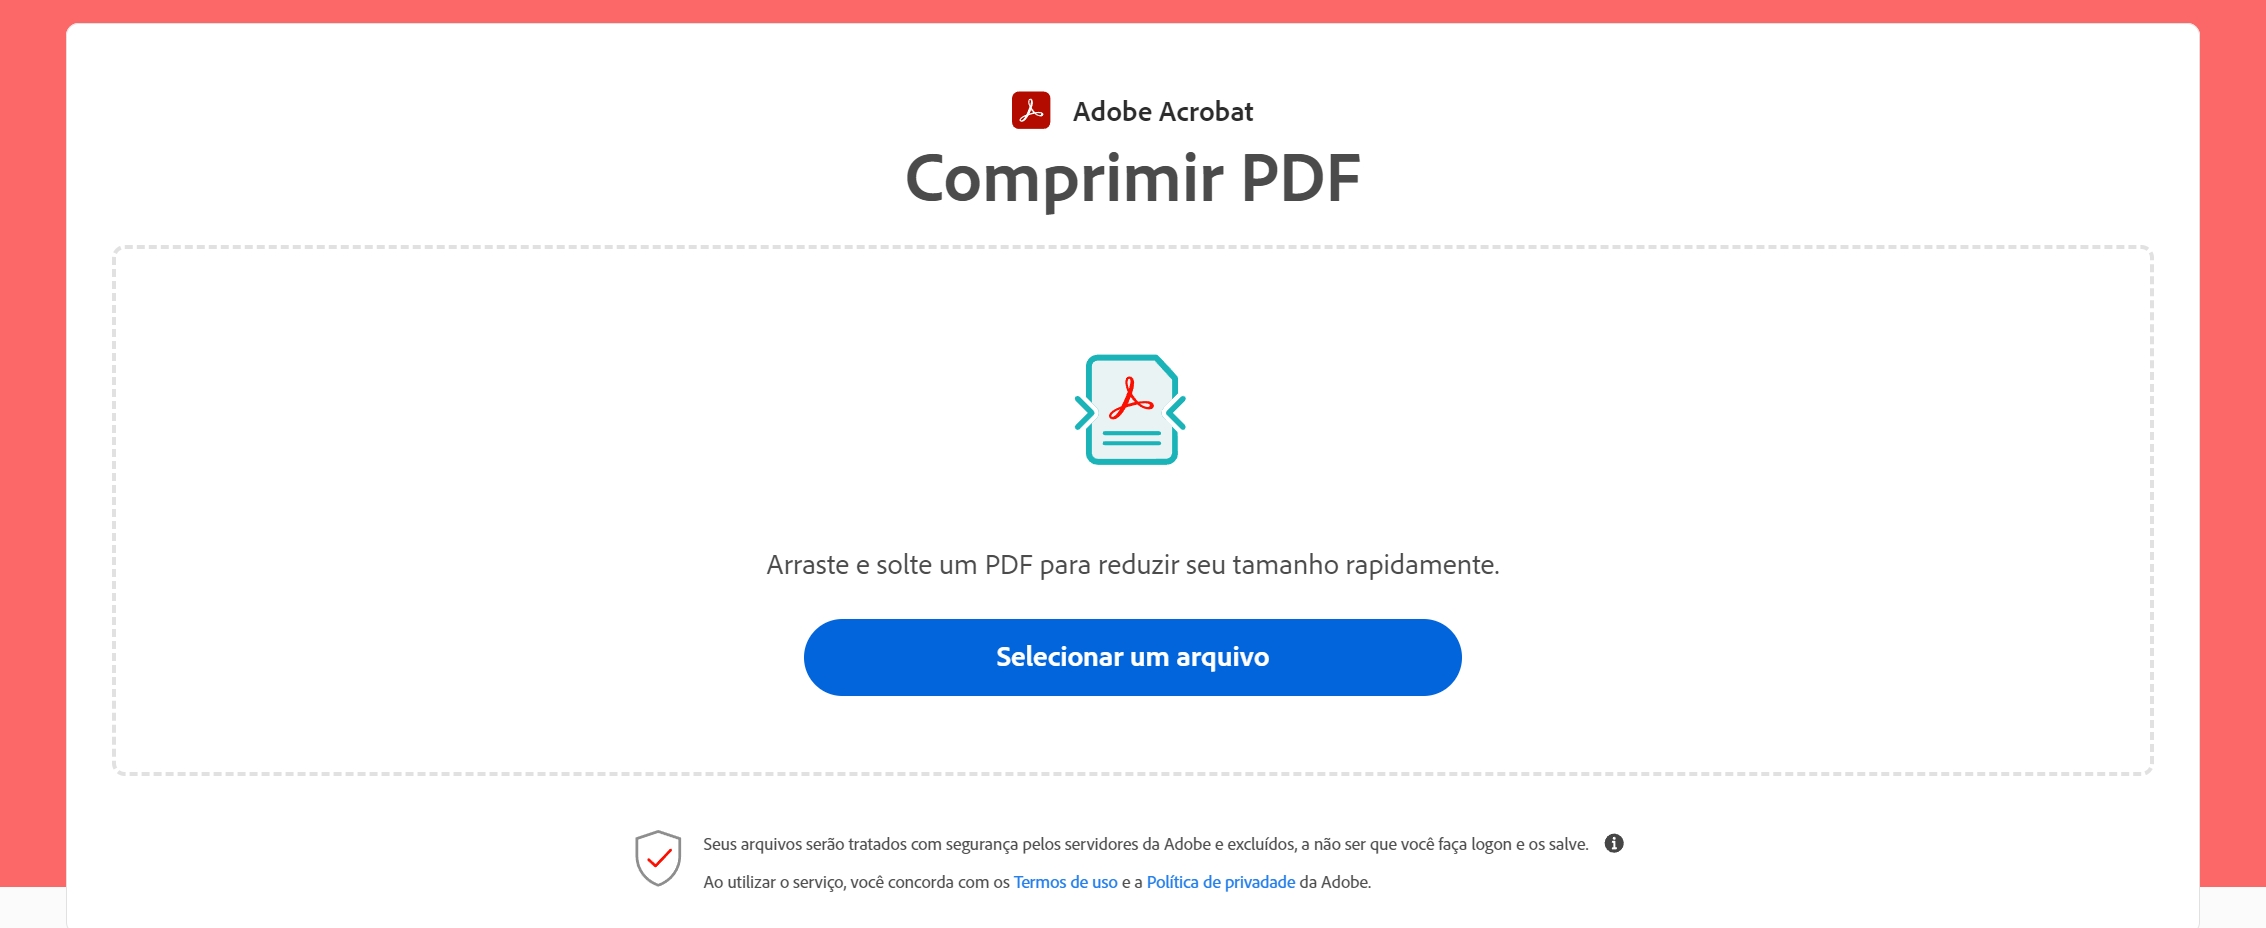 Comprimir PDF no Adobe